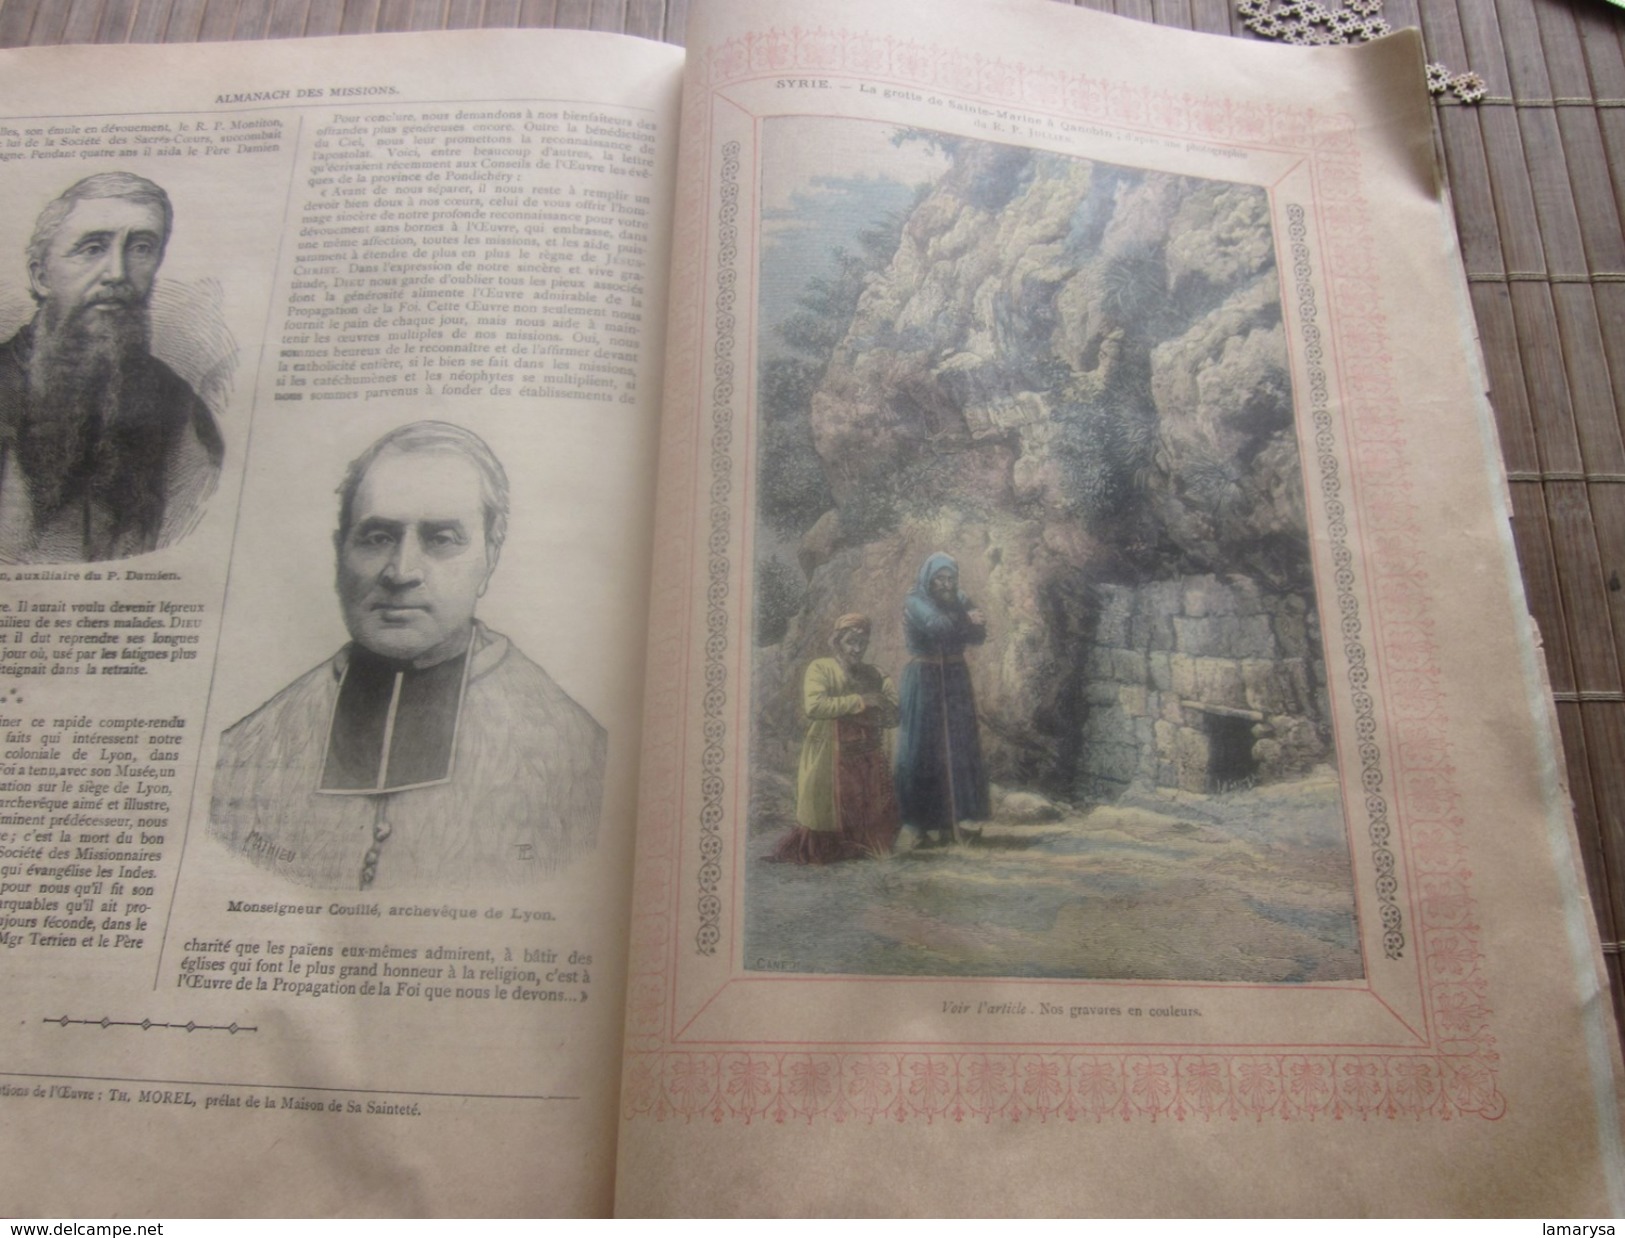 1895 ALMANACH DES MISSIONS BELLE ILLUSTRATIONS CHROMOS Réclames PUB  Religion Chrétienne Bureau Calendrier prosélytisme